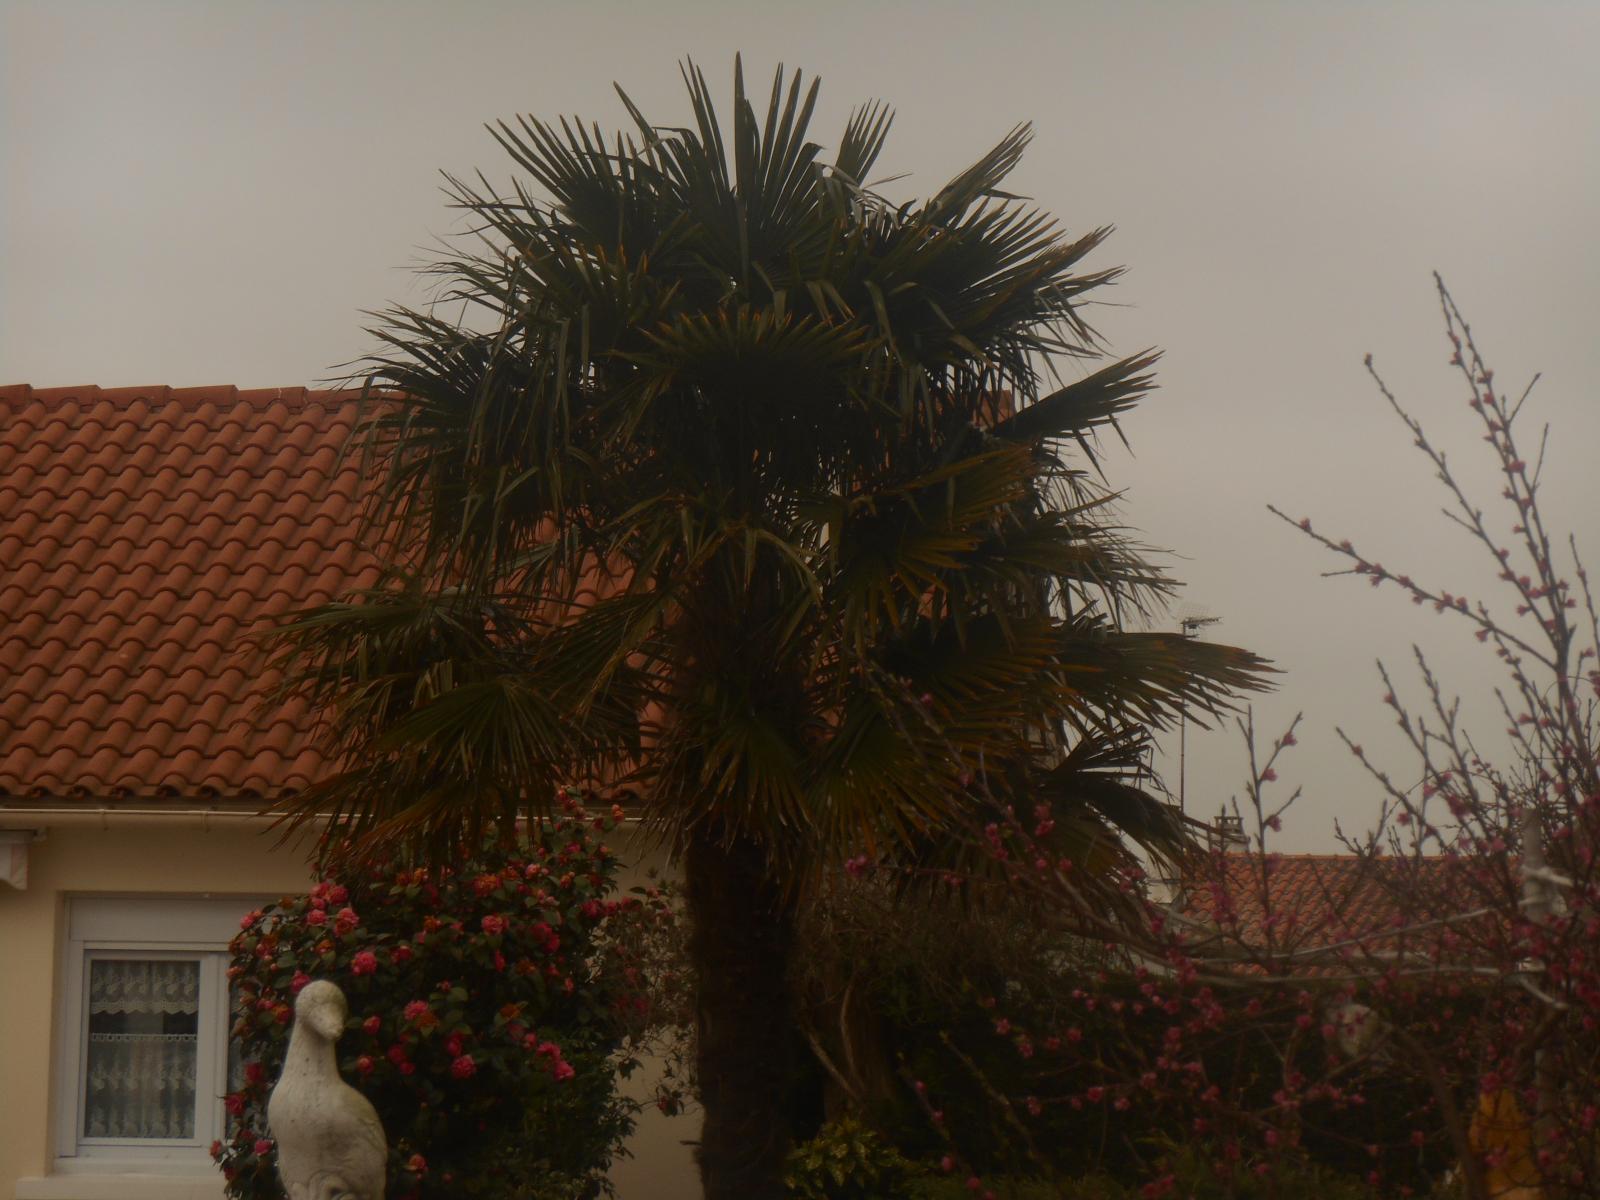 Beau palmier des voisins (Les Moutiers en Retz)